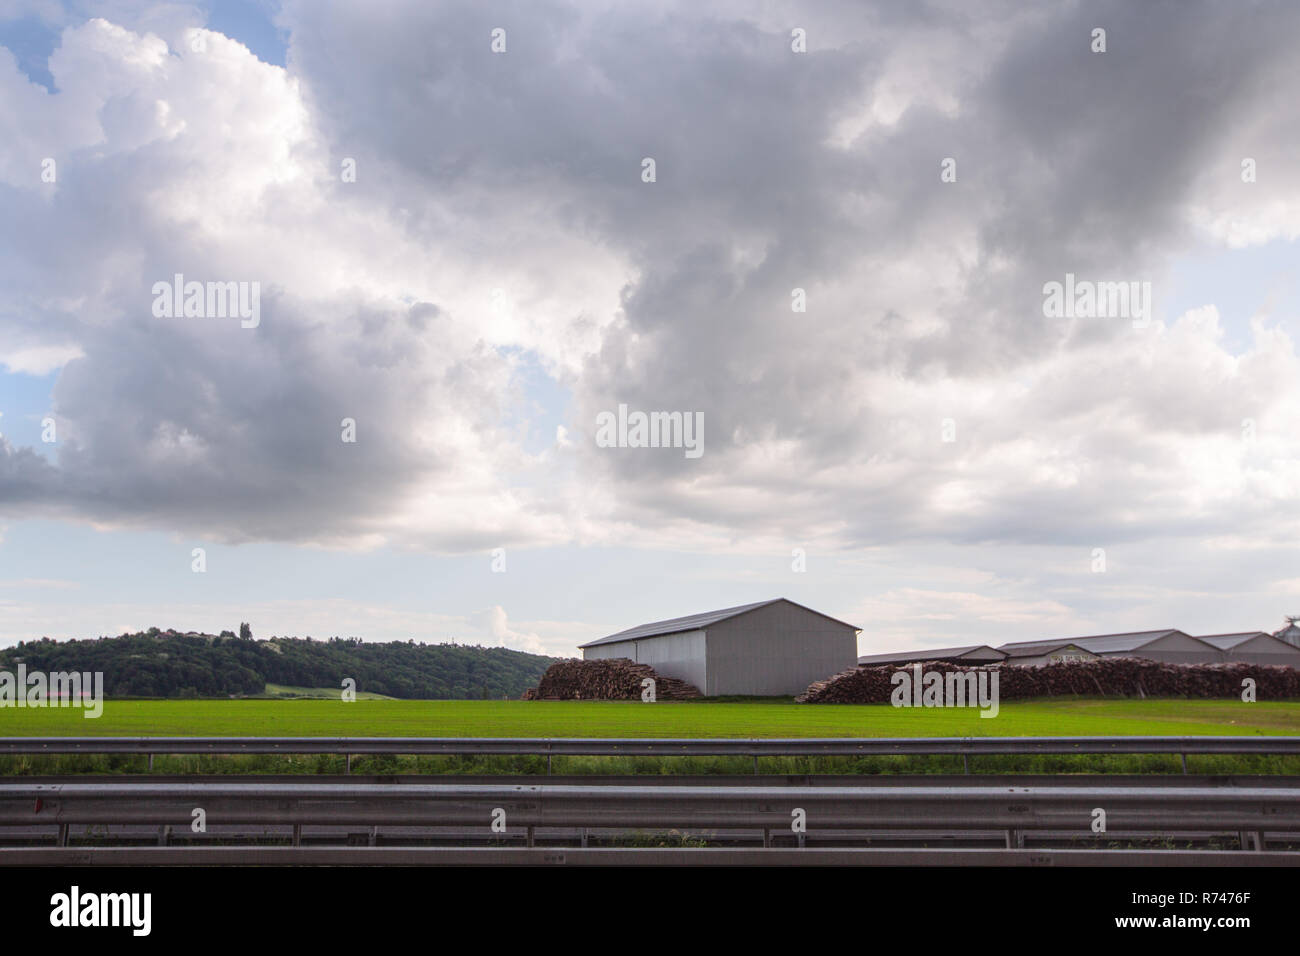 Paesaggio con edifici agricoli e registri sovrapposti, Francenigo, Veneto, Italia Foto Stock